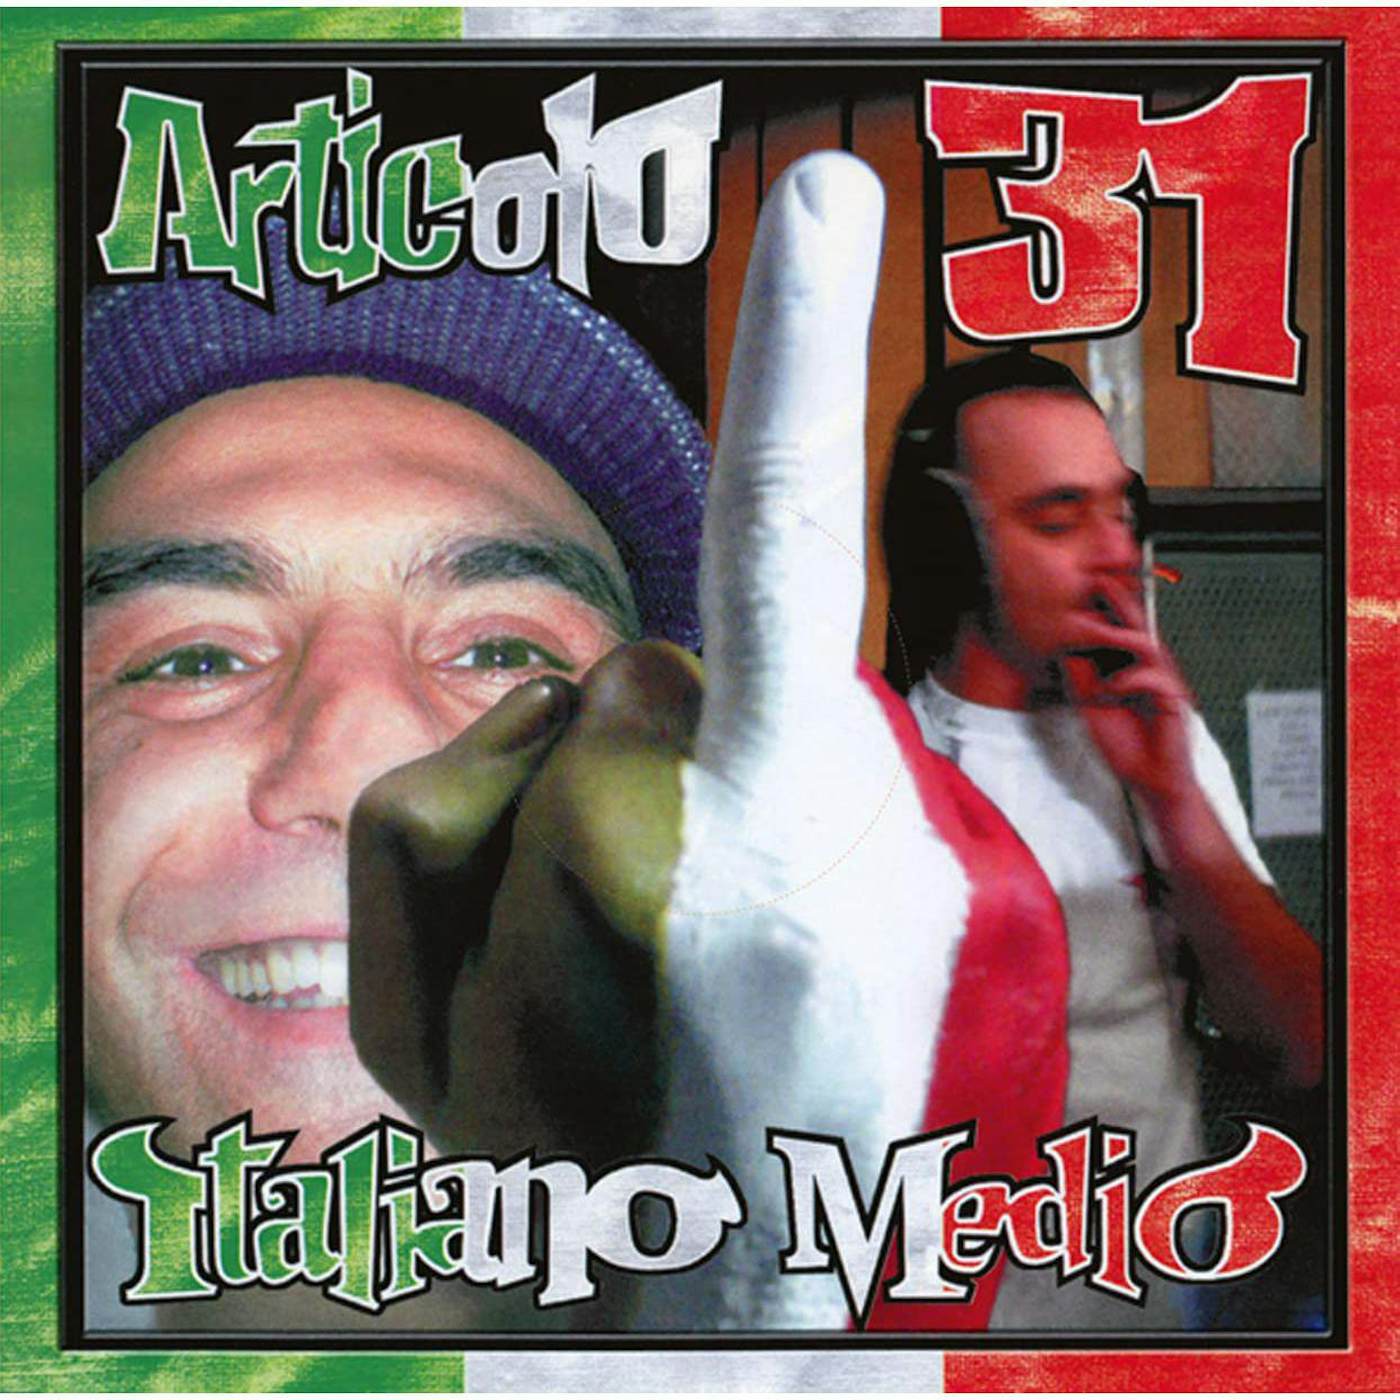 Articolo 31 Italiano Medio (2LP/Silver) Vinyl Record